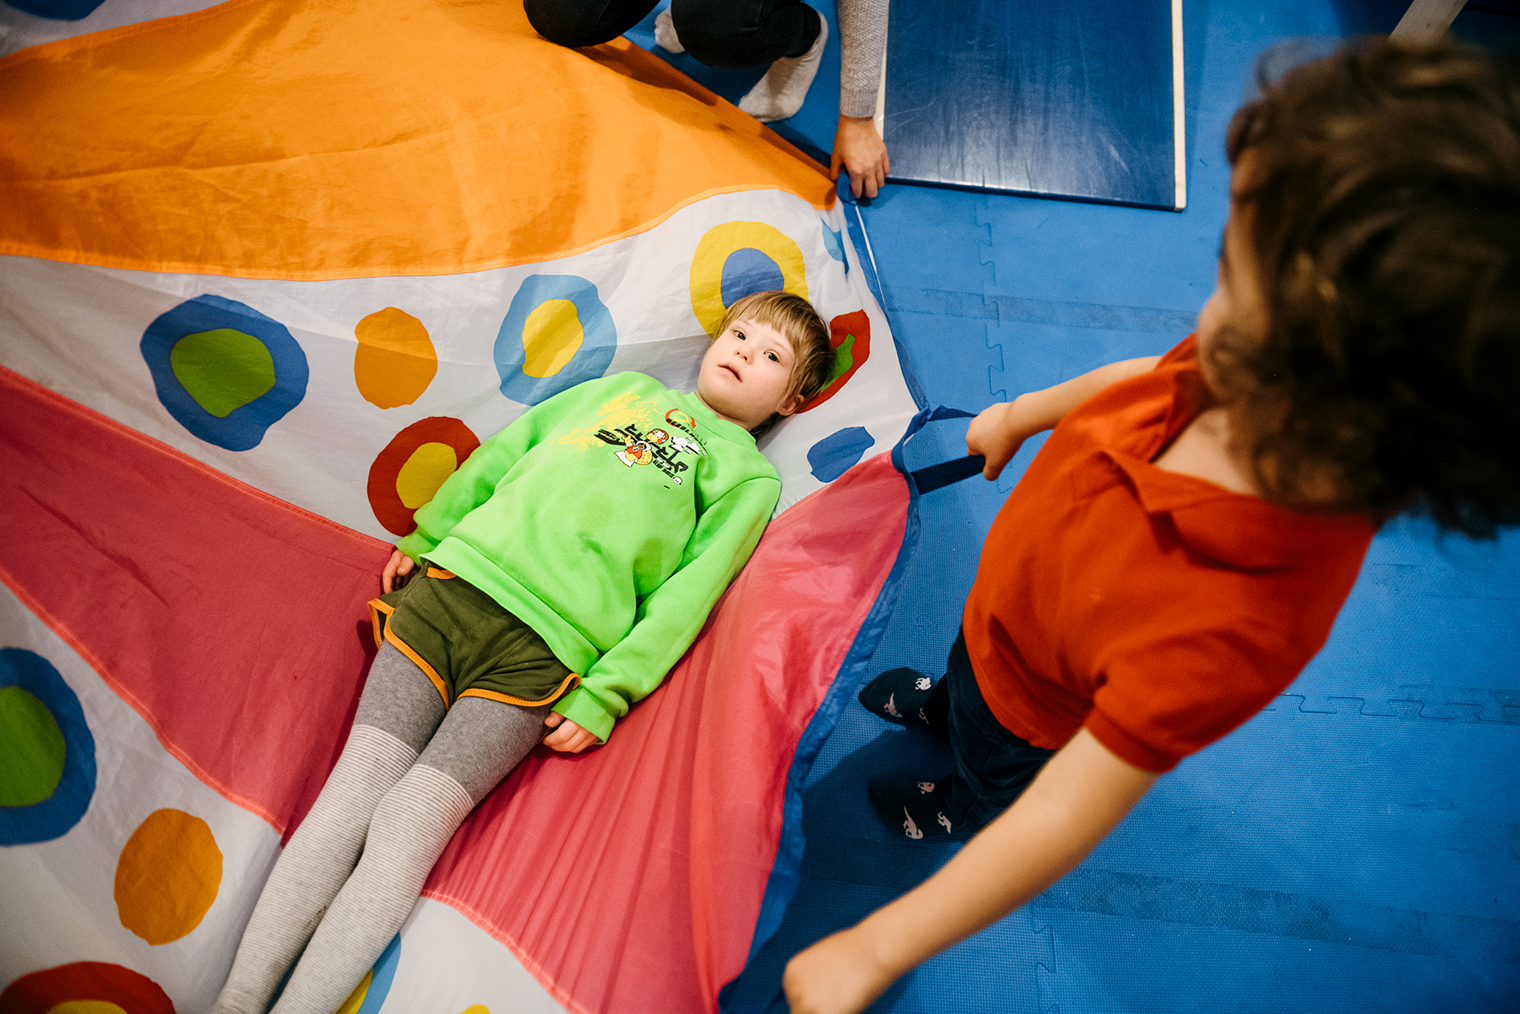 Занятия в центре помогают детям с инвалидностью развивать навыки коммуникации, взаимодействия, игры и получать социальный опыт